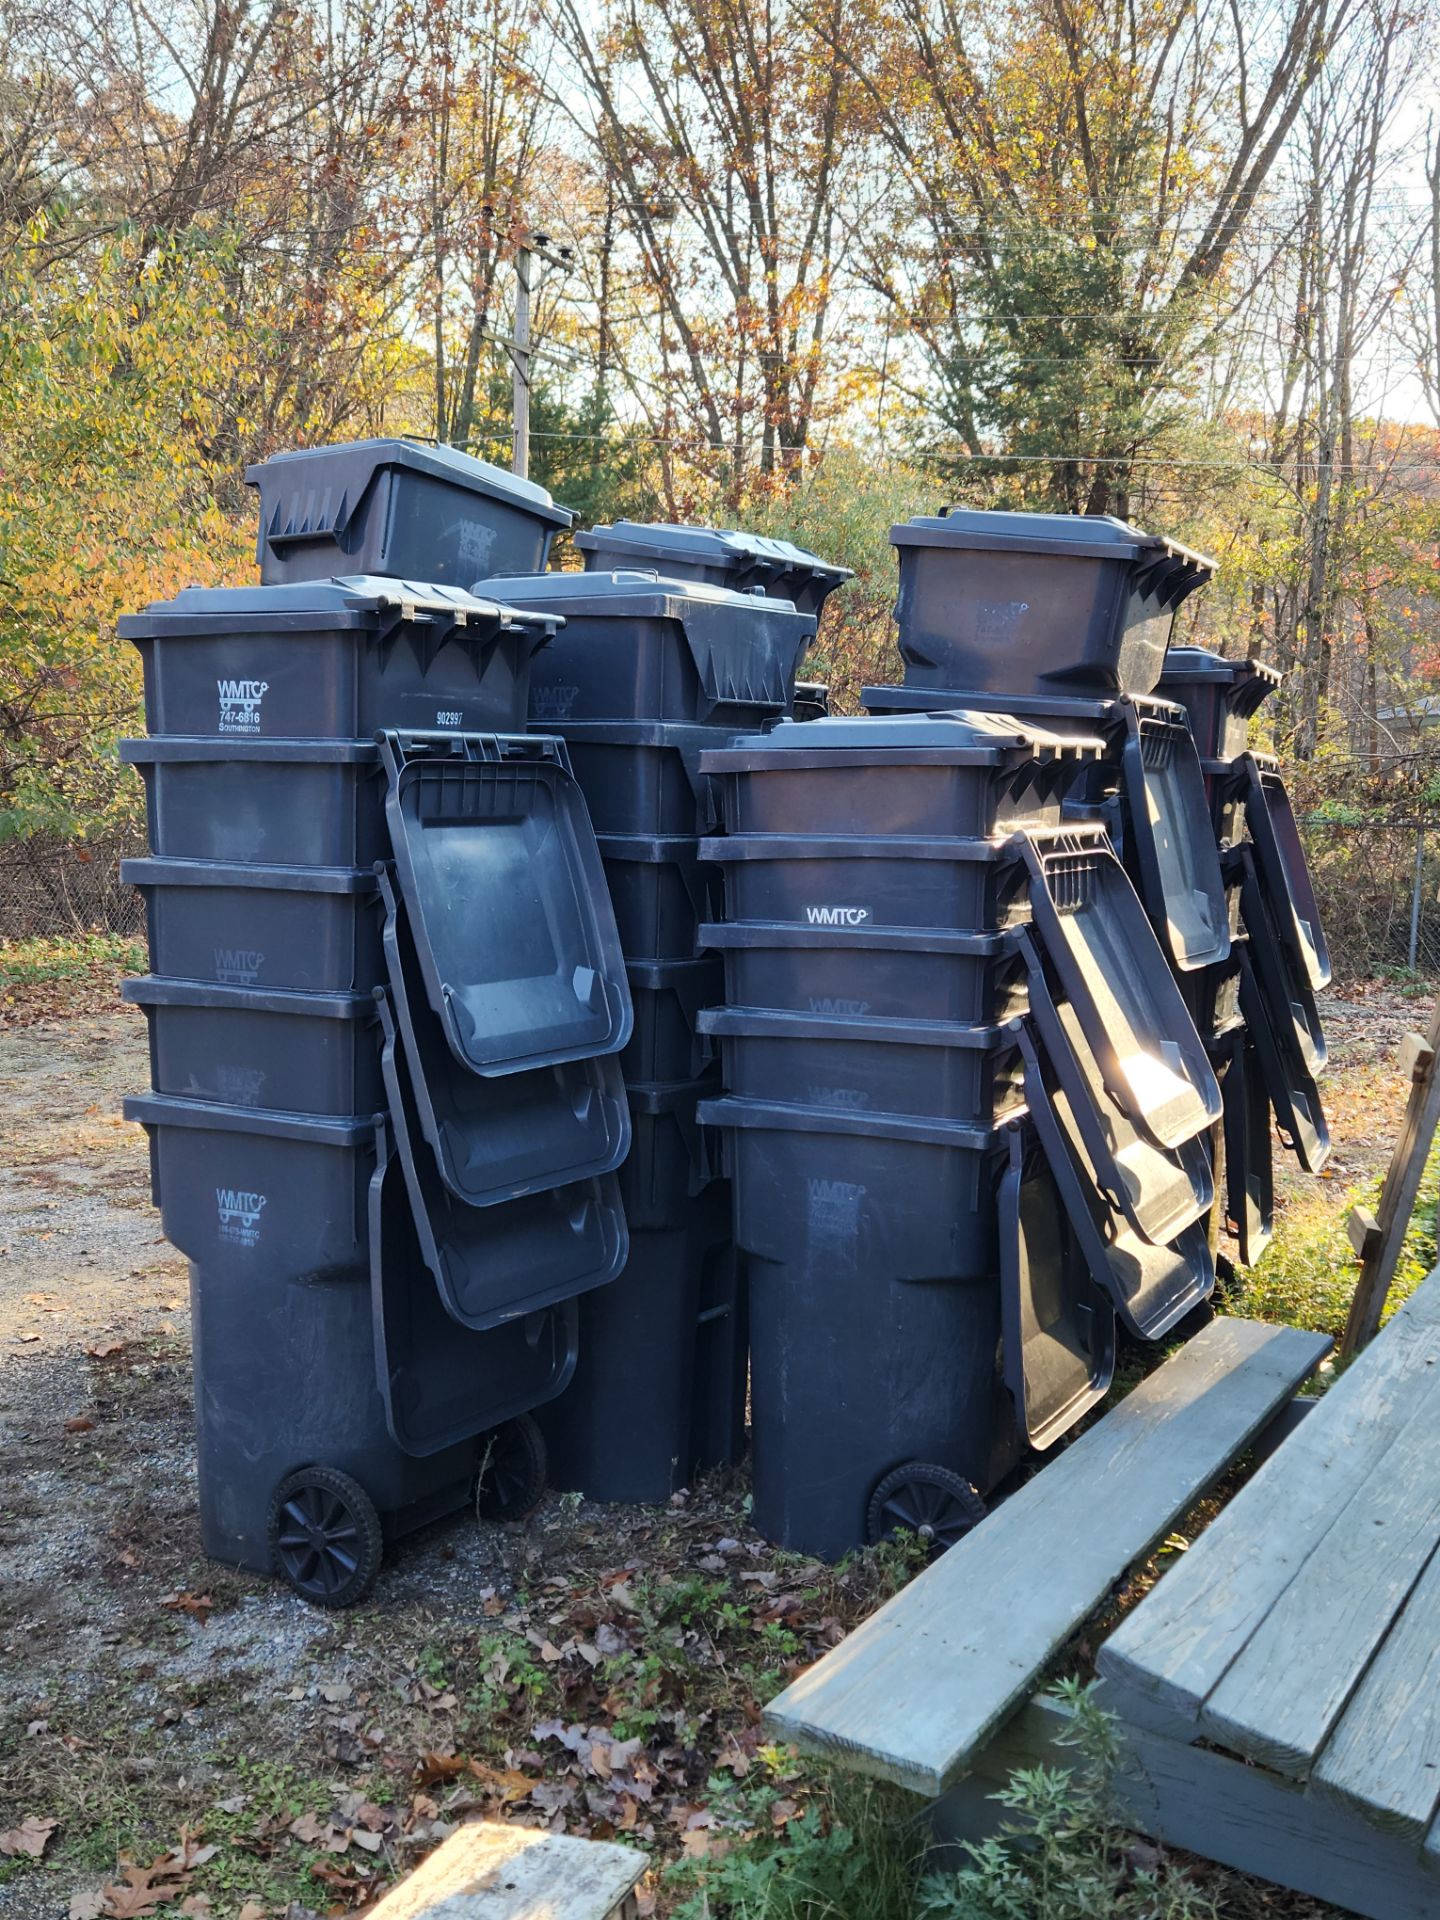 Dumpster Barrels - Image 2 of 3